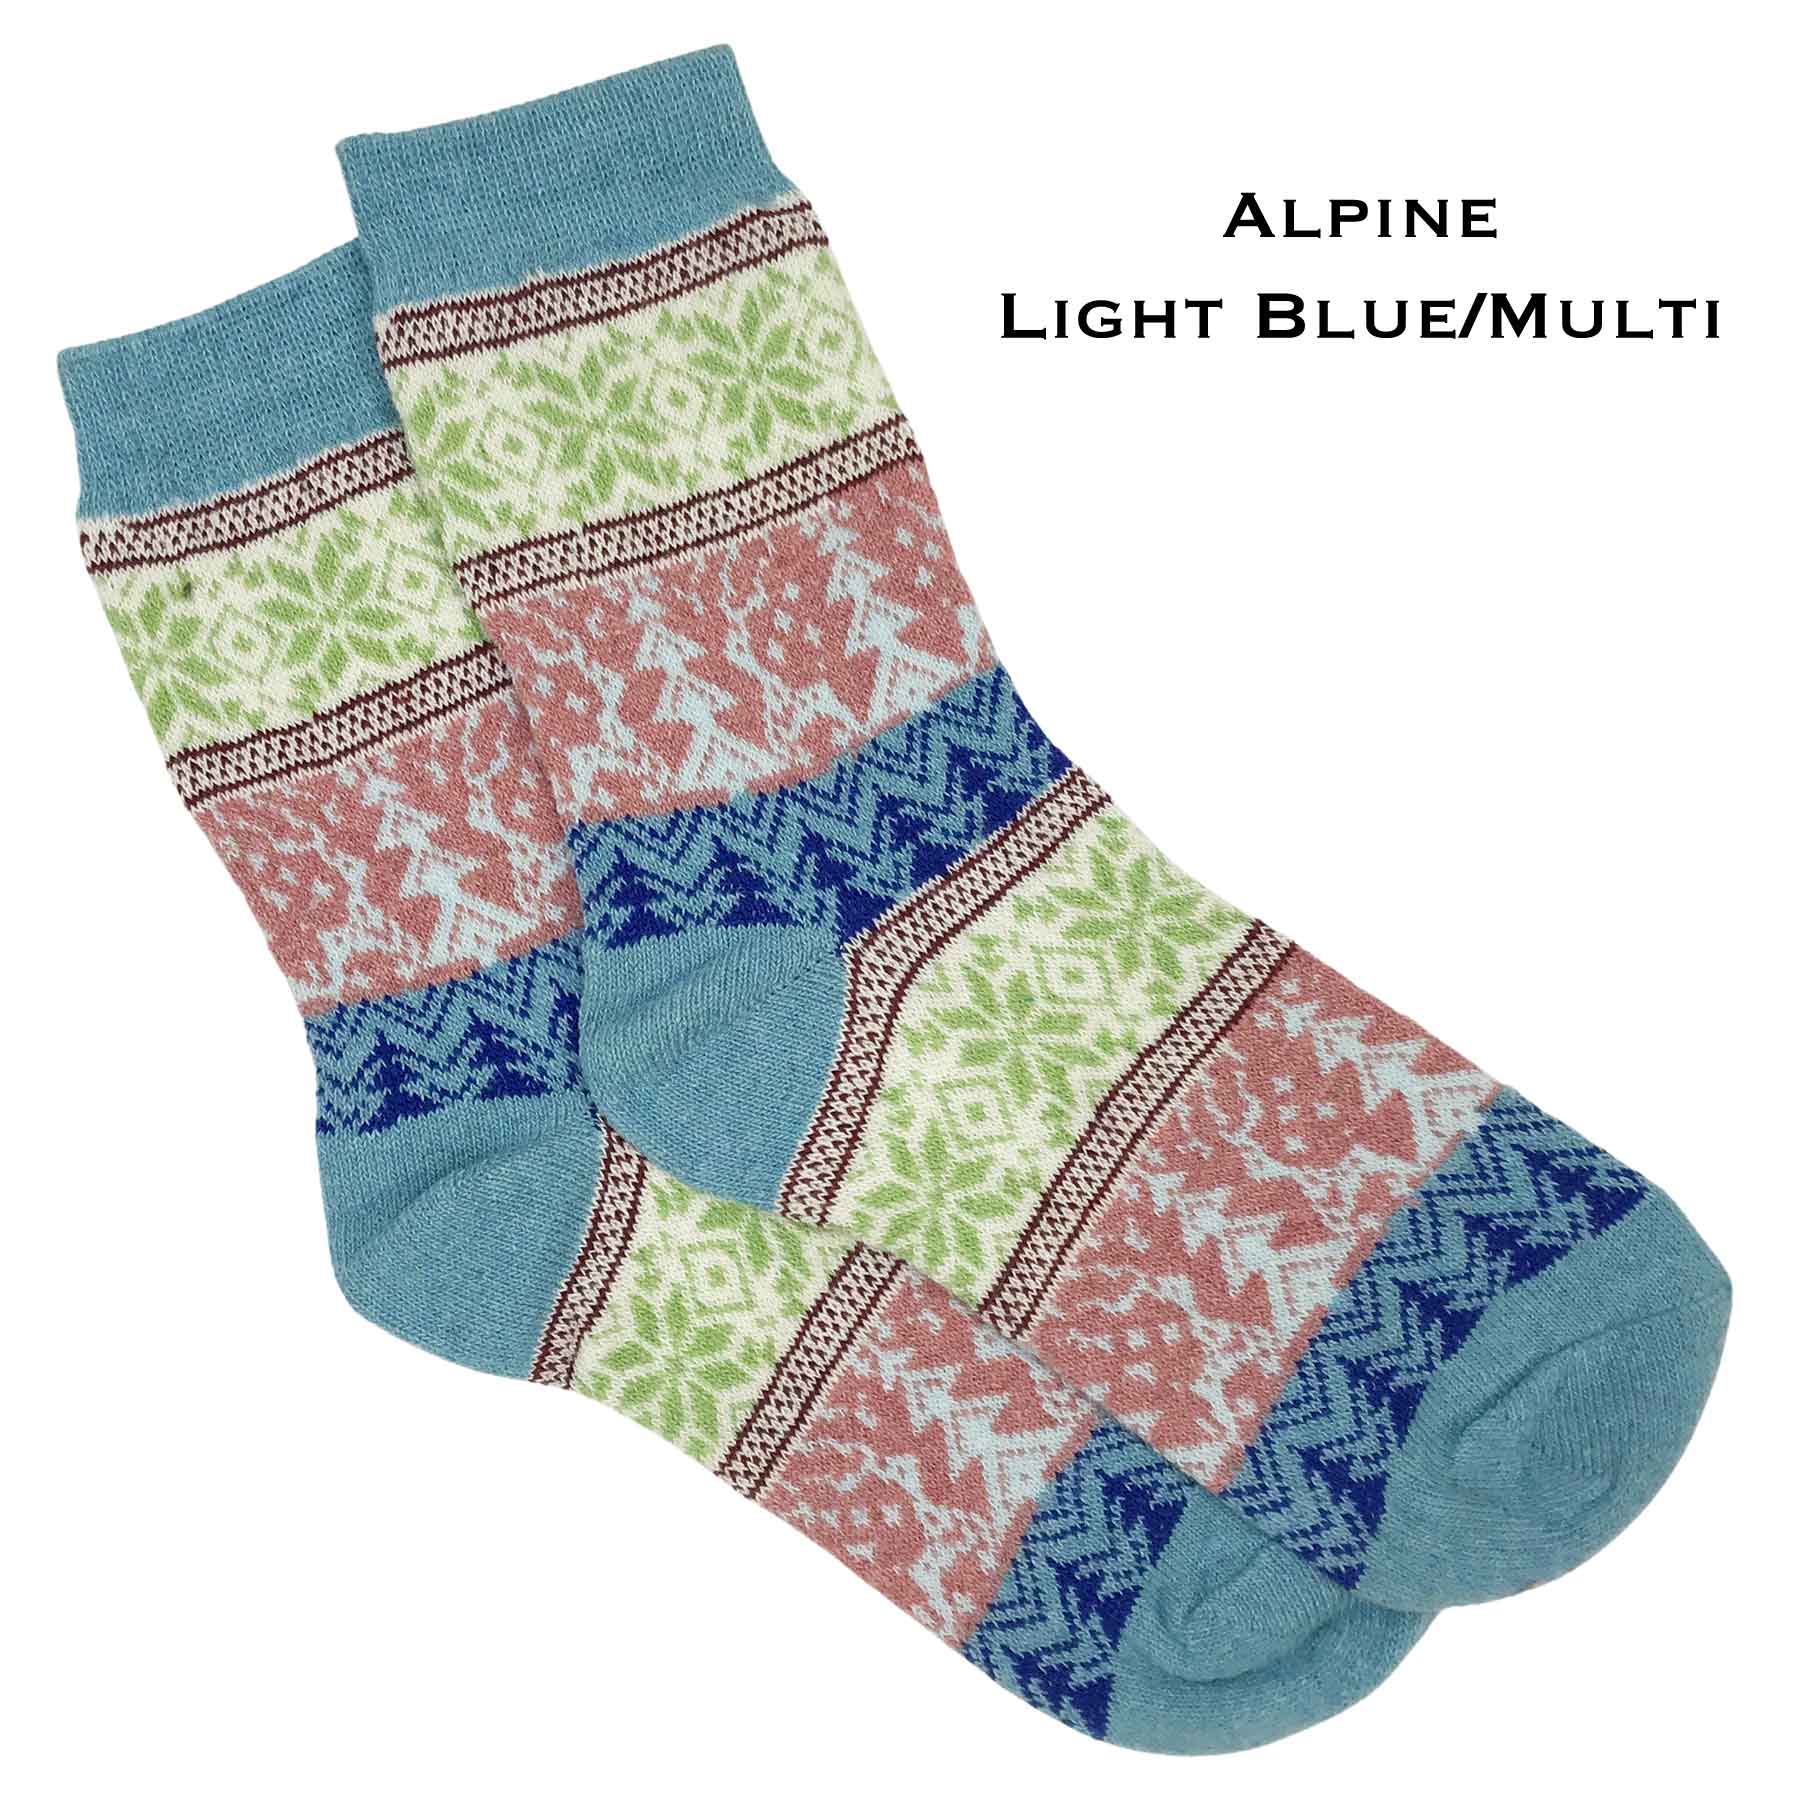 Alpine - Light Blue/Multi